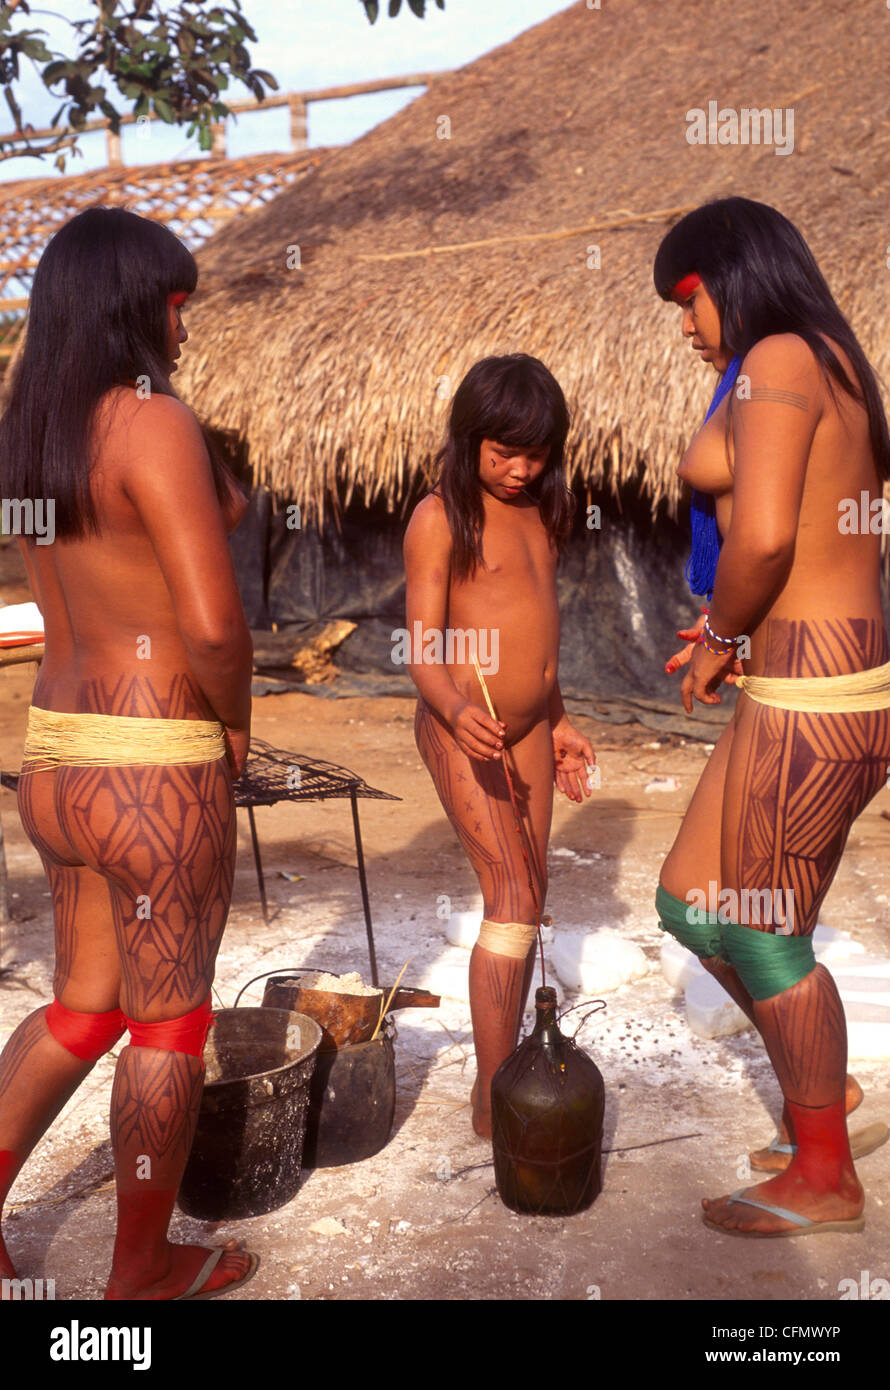 Секс африканскых аборигенов (85 фото)